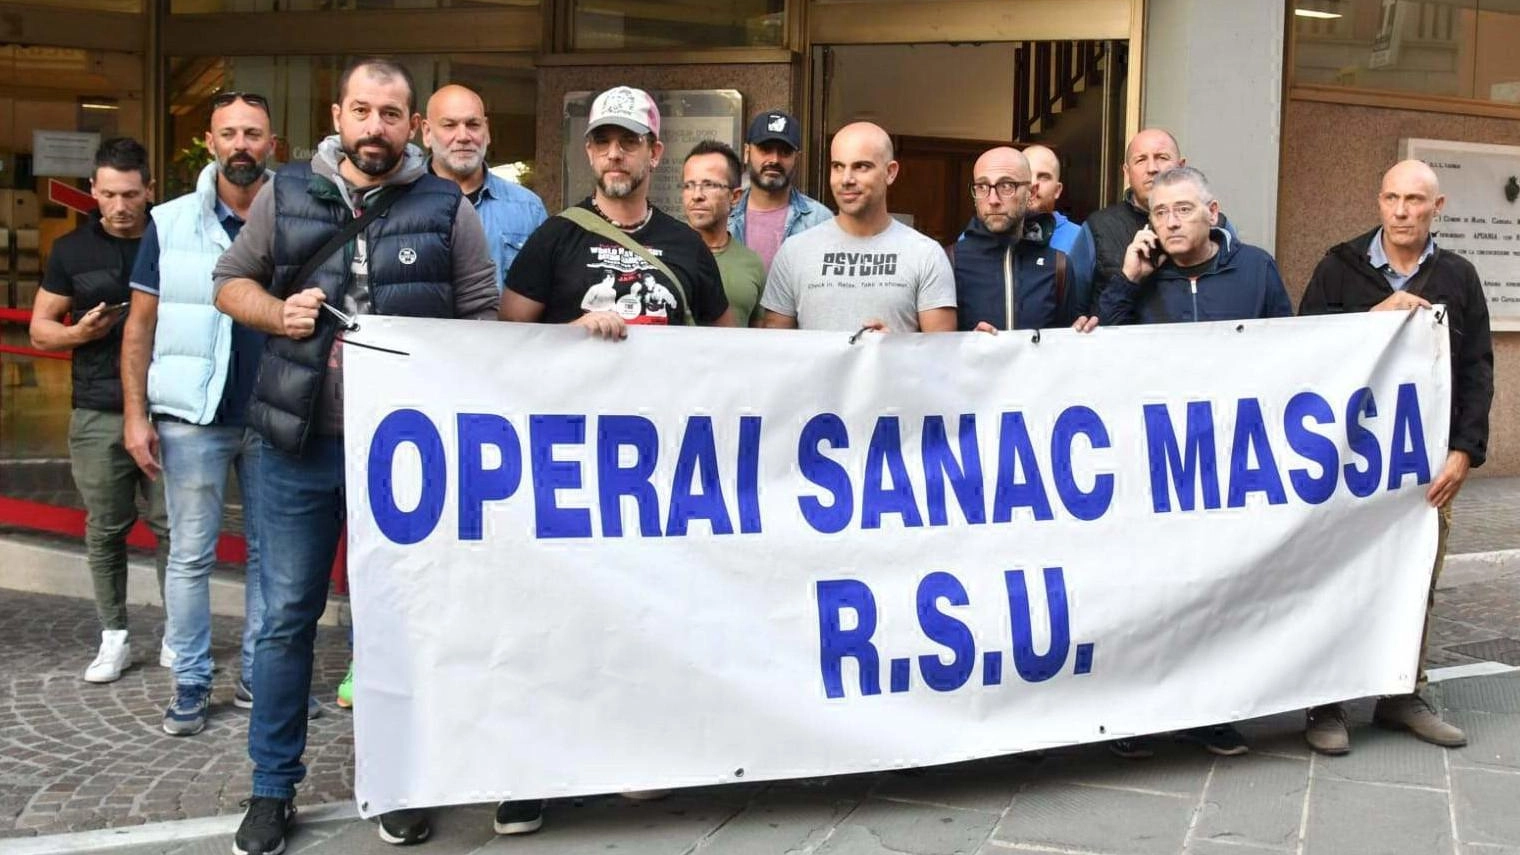 Buone notizie per Sanac. Sono ripartiti gli ordini dall’ex Ilva di Taranto: "Risultato importante"